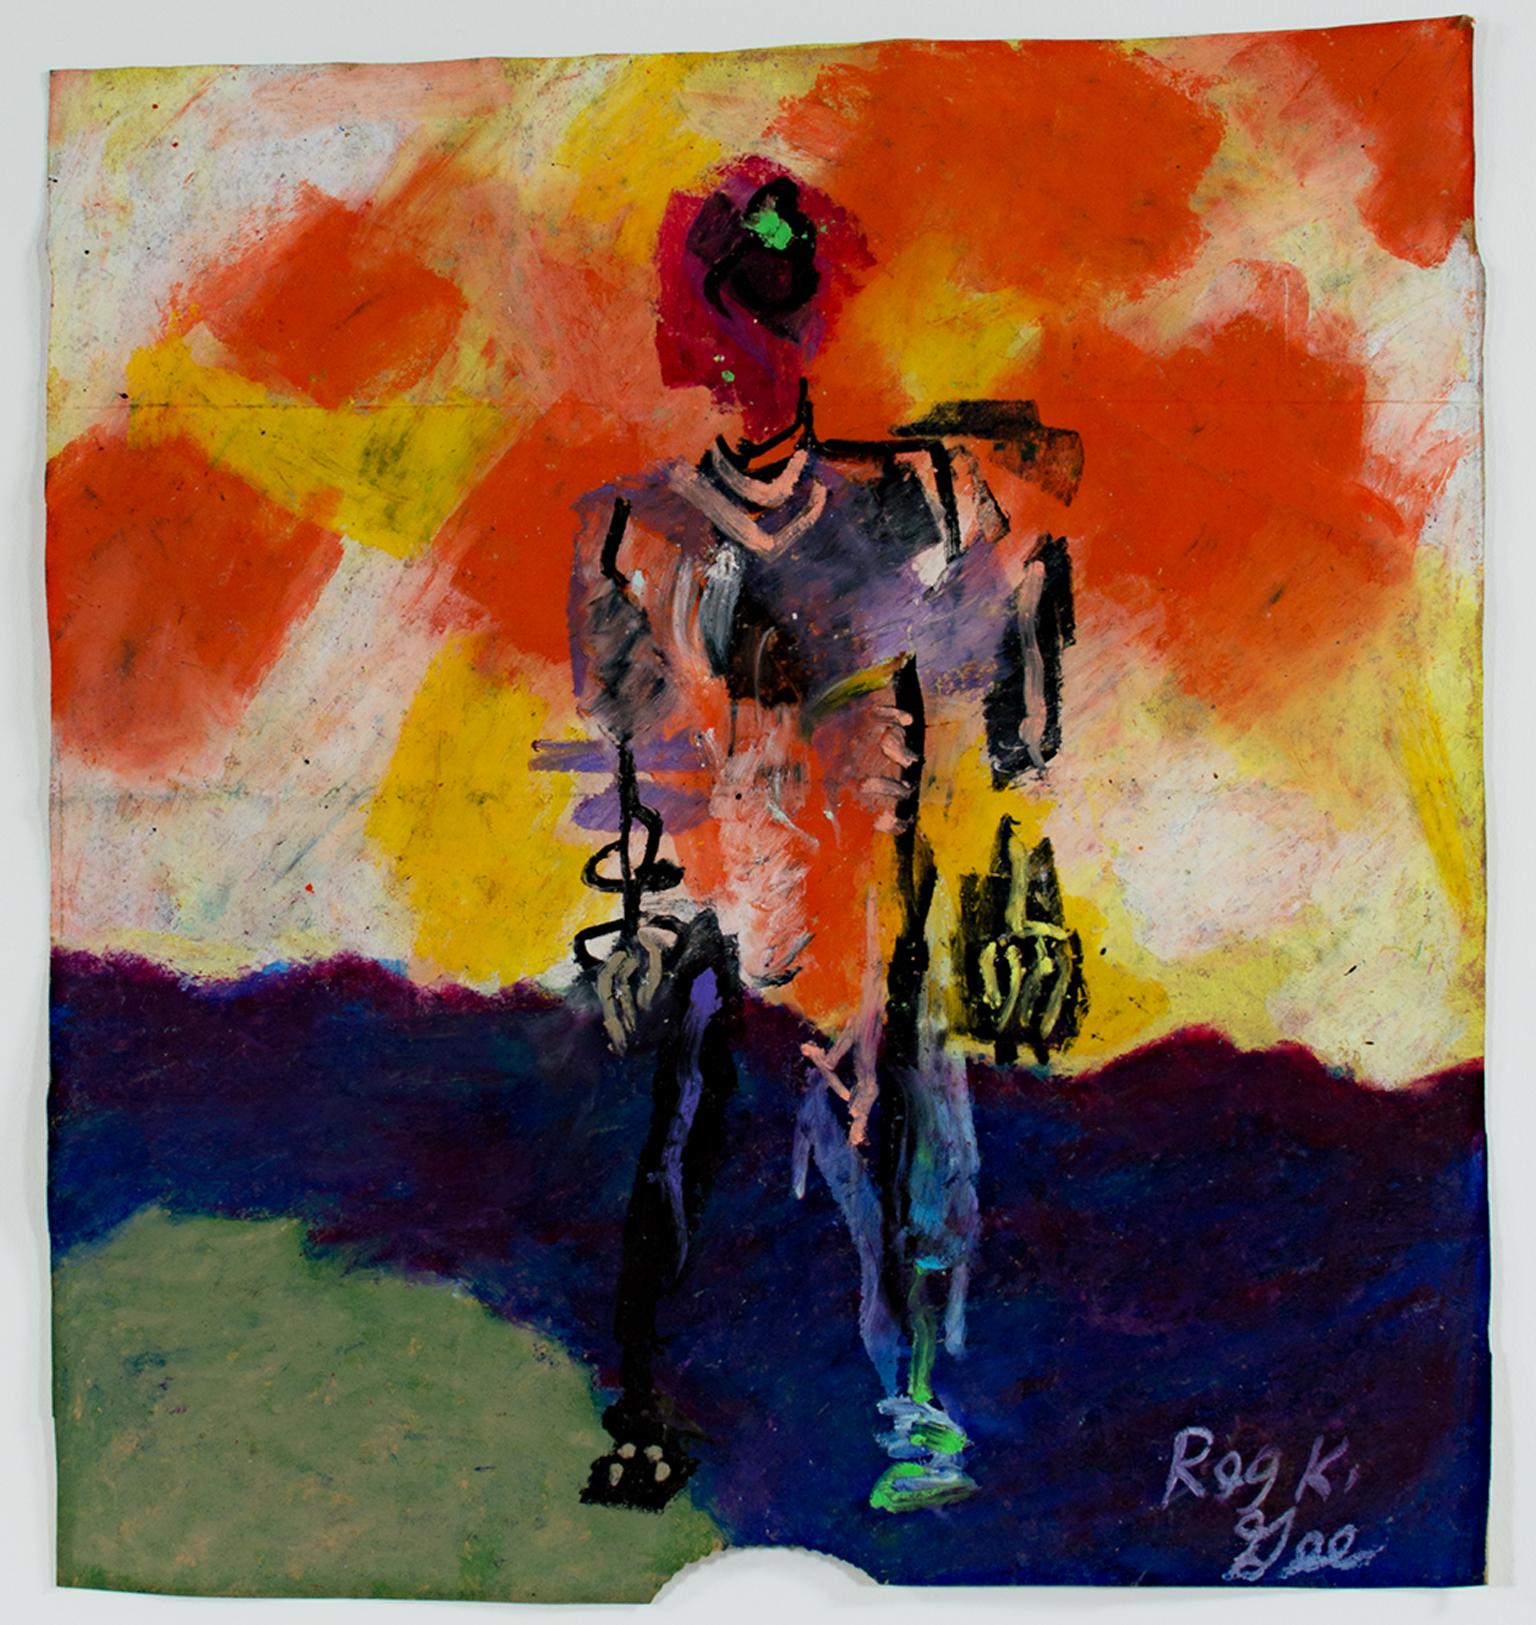 "Remembering" ist eine Original-Ölpastellzeichnung auf einer Einkaufstüte von Reginald K.K. Gee. Der Künstler hat das Werk unten rechts signiert. Es zeigt einen abstrahierten, skelettartigen Mann vor einem leuchtenden Himmel in Orange und Gelb. 

13